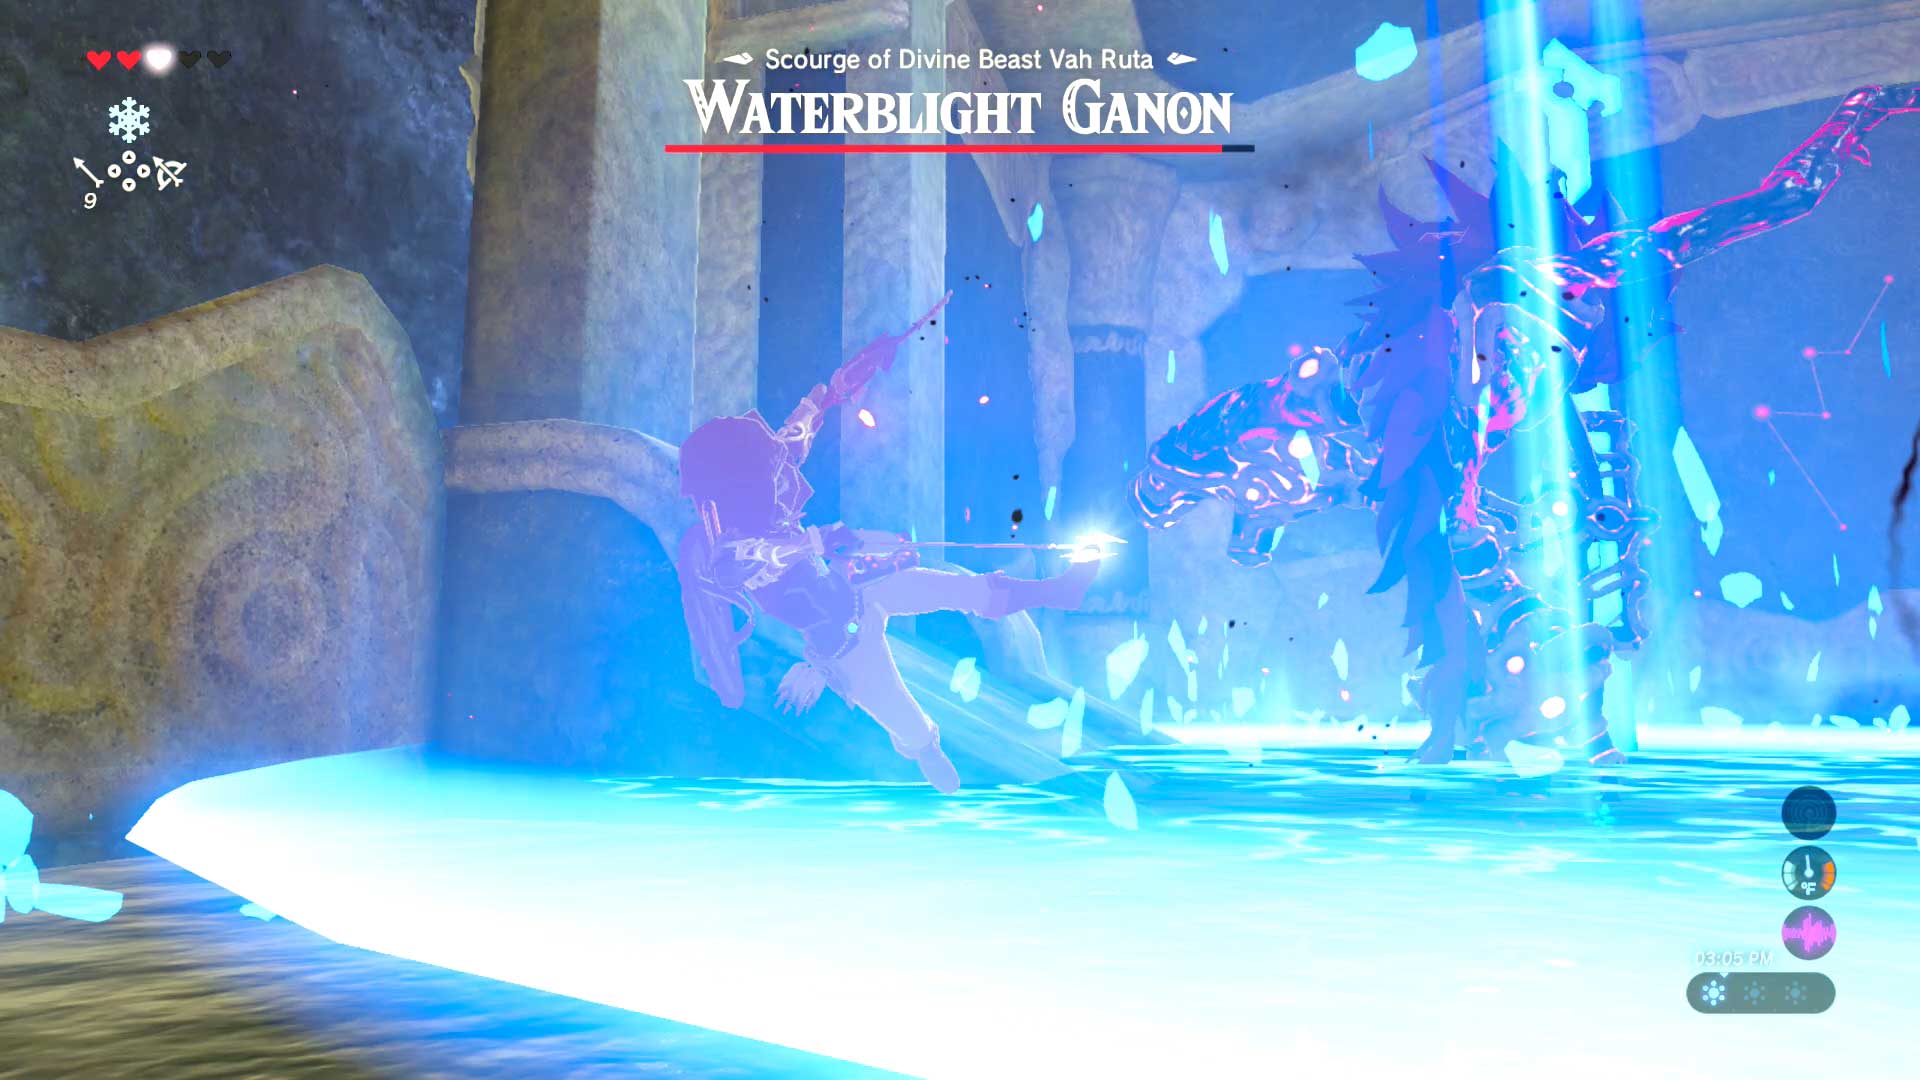 Waterblight Ganon phase 1.